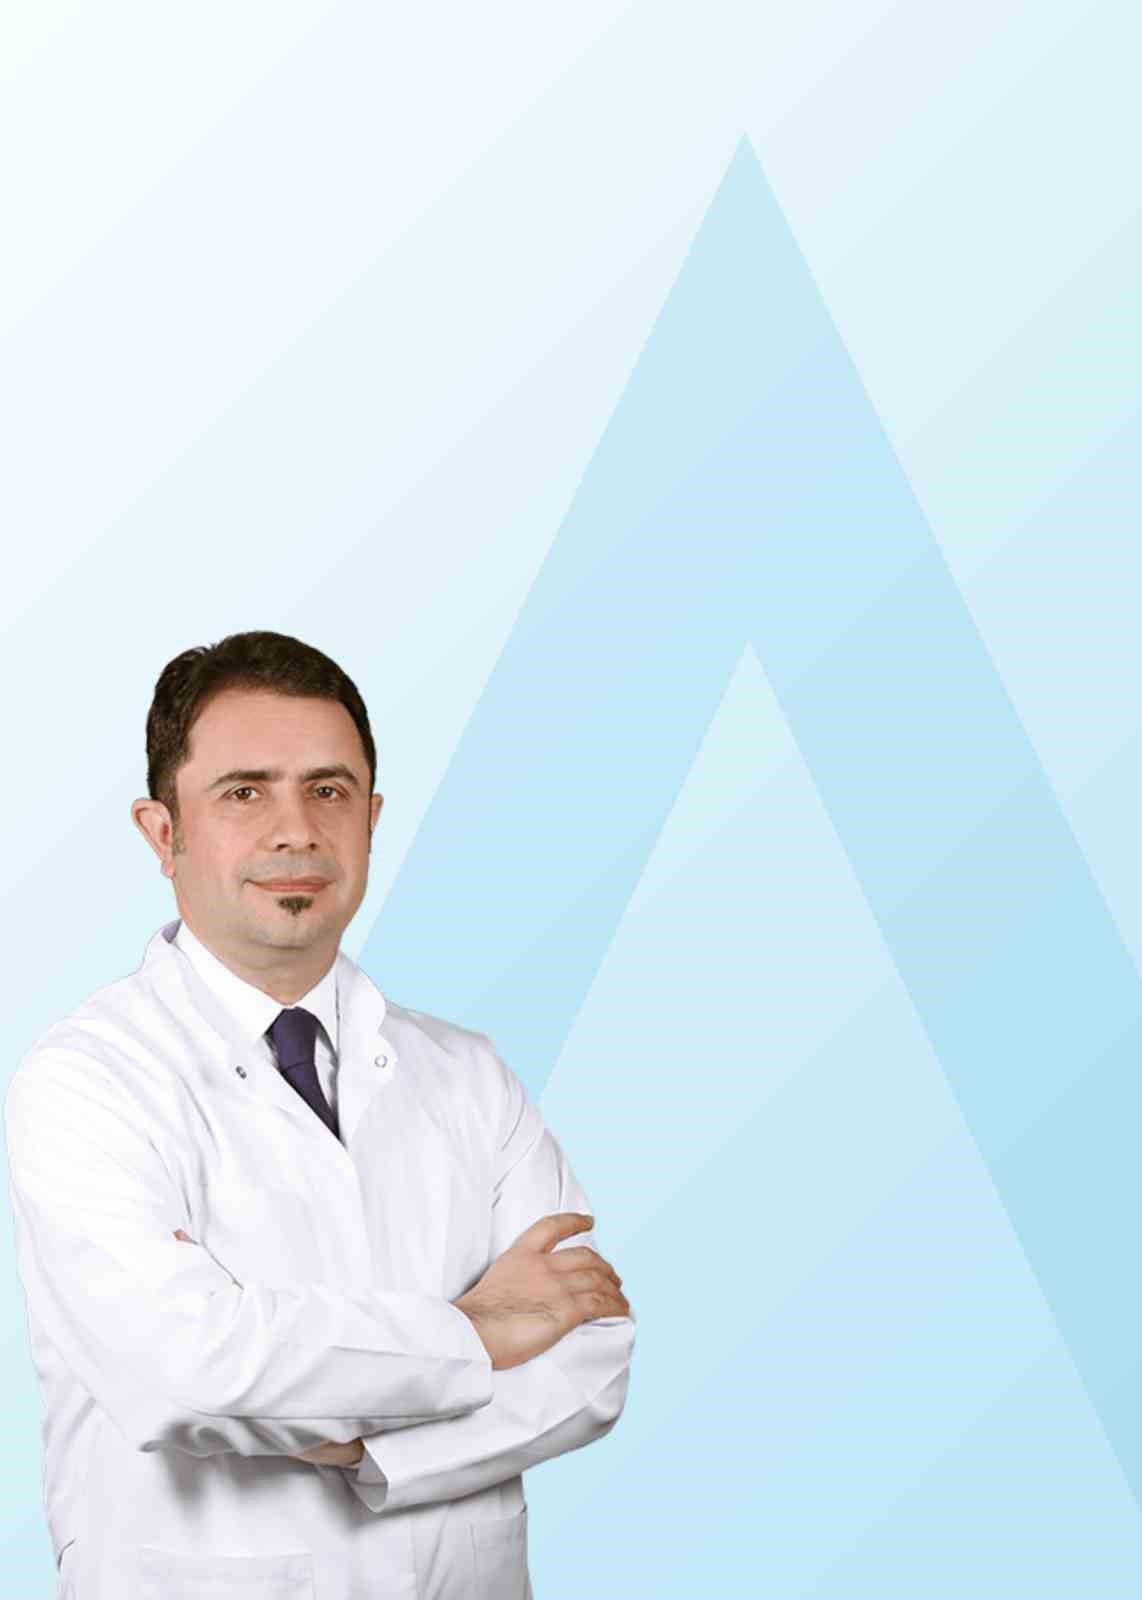 Acıbadem Eskişehir Hastanesi Endokrinoloji Uzmanı Prof. Dr. Deniz Gökalp: